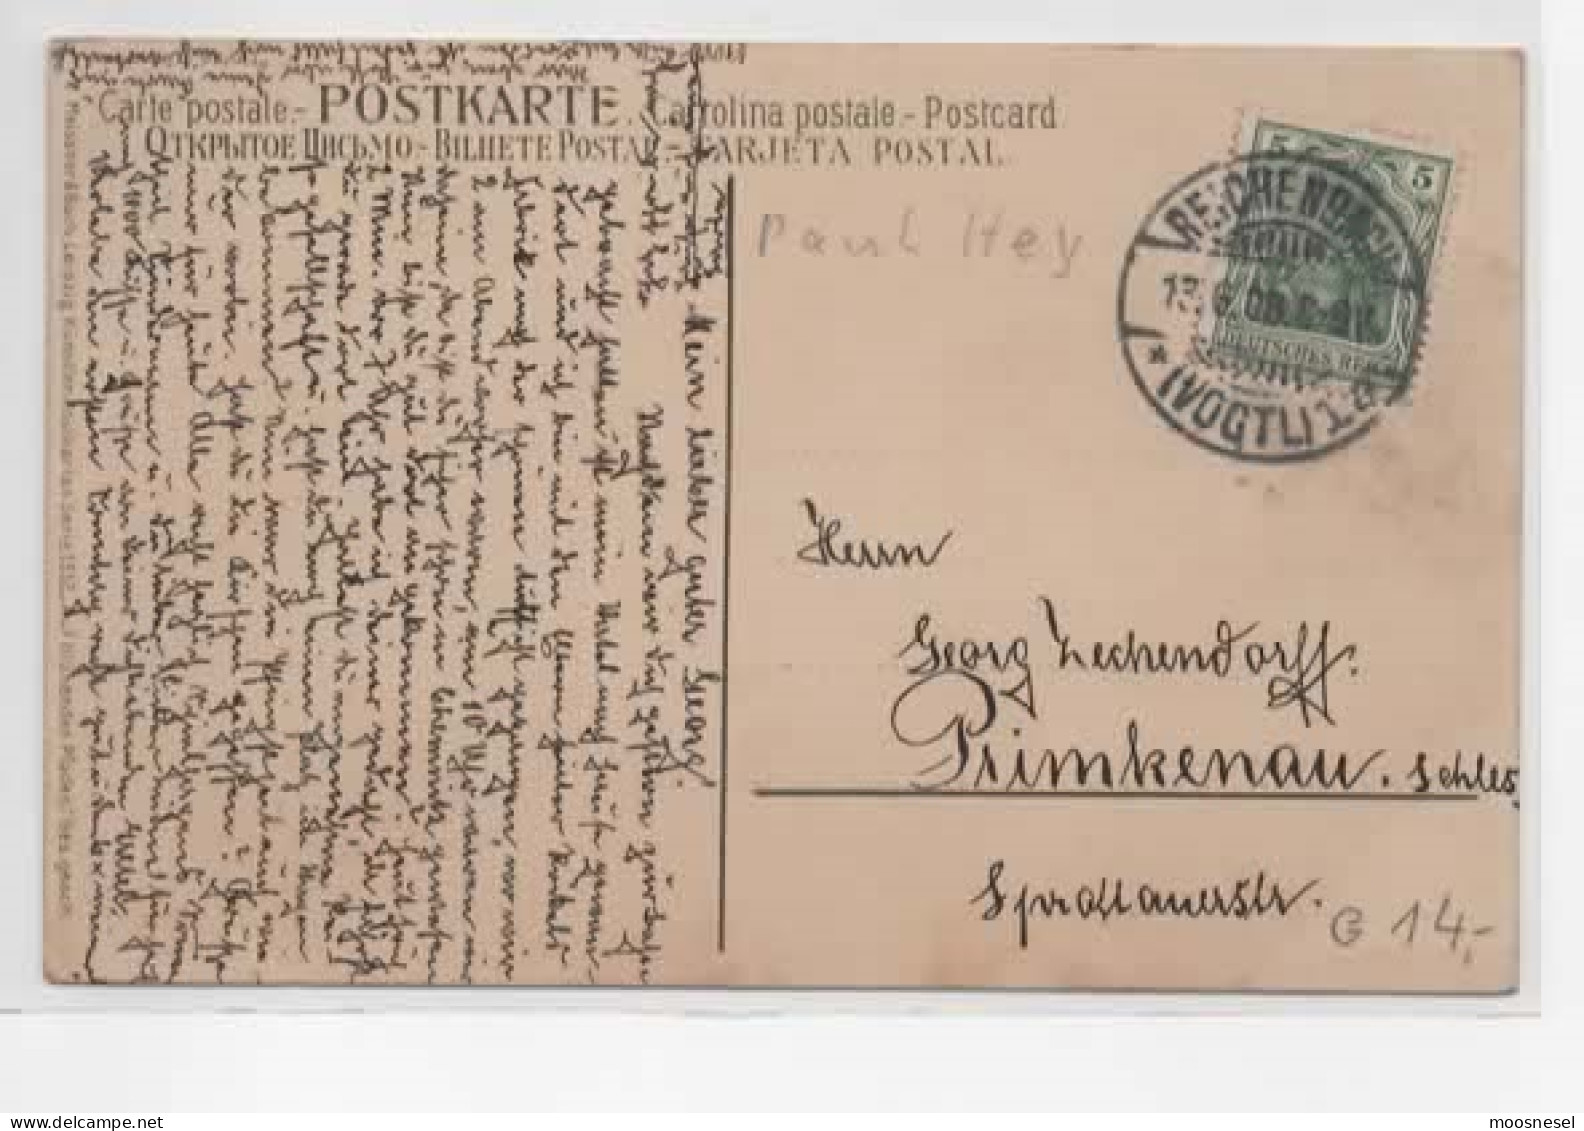 Antike Postkarte  Paul Hey "Auf Blühenden Pfaden" Serie 1512 - 1900-1949